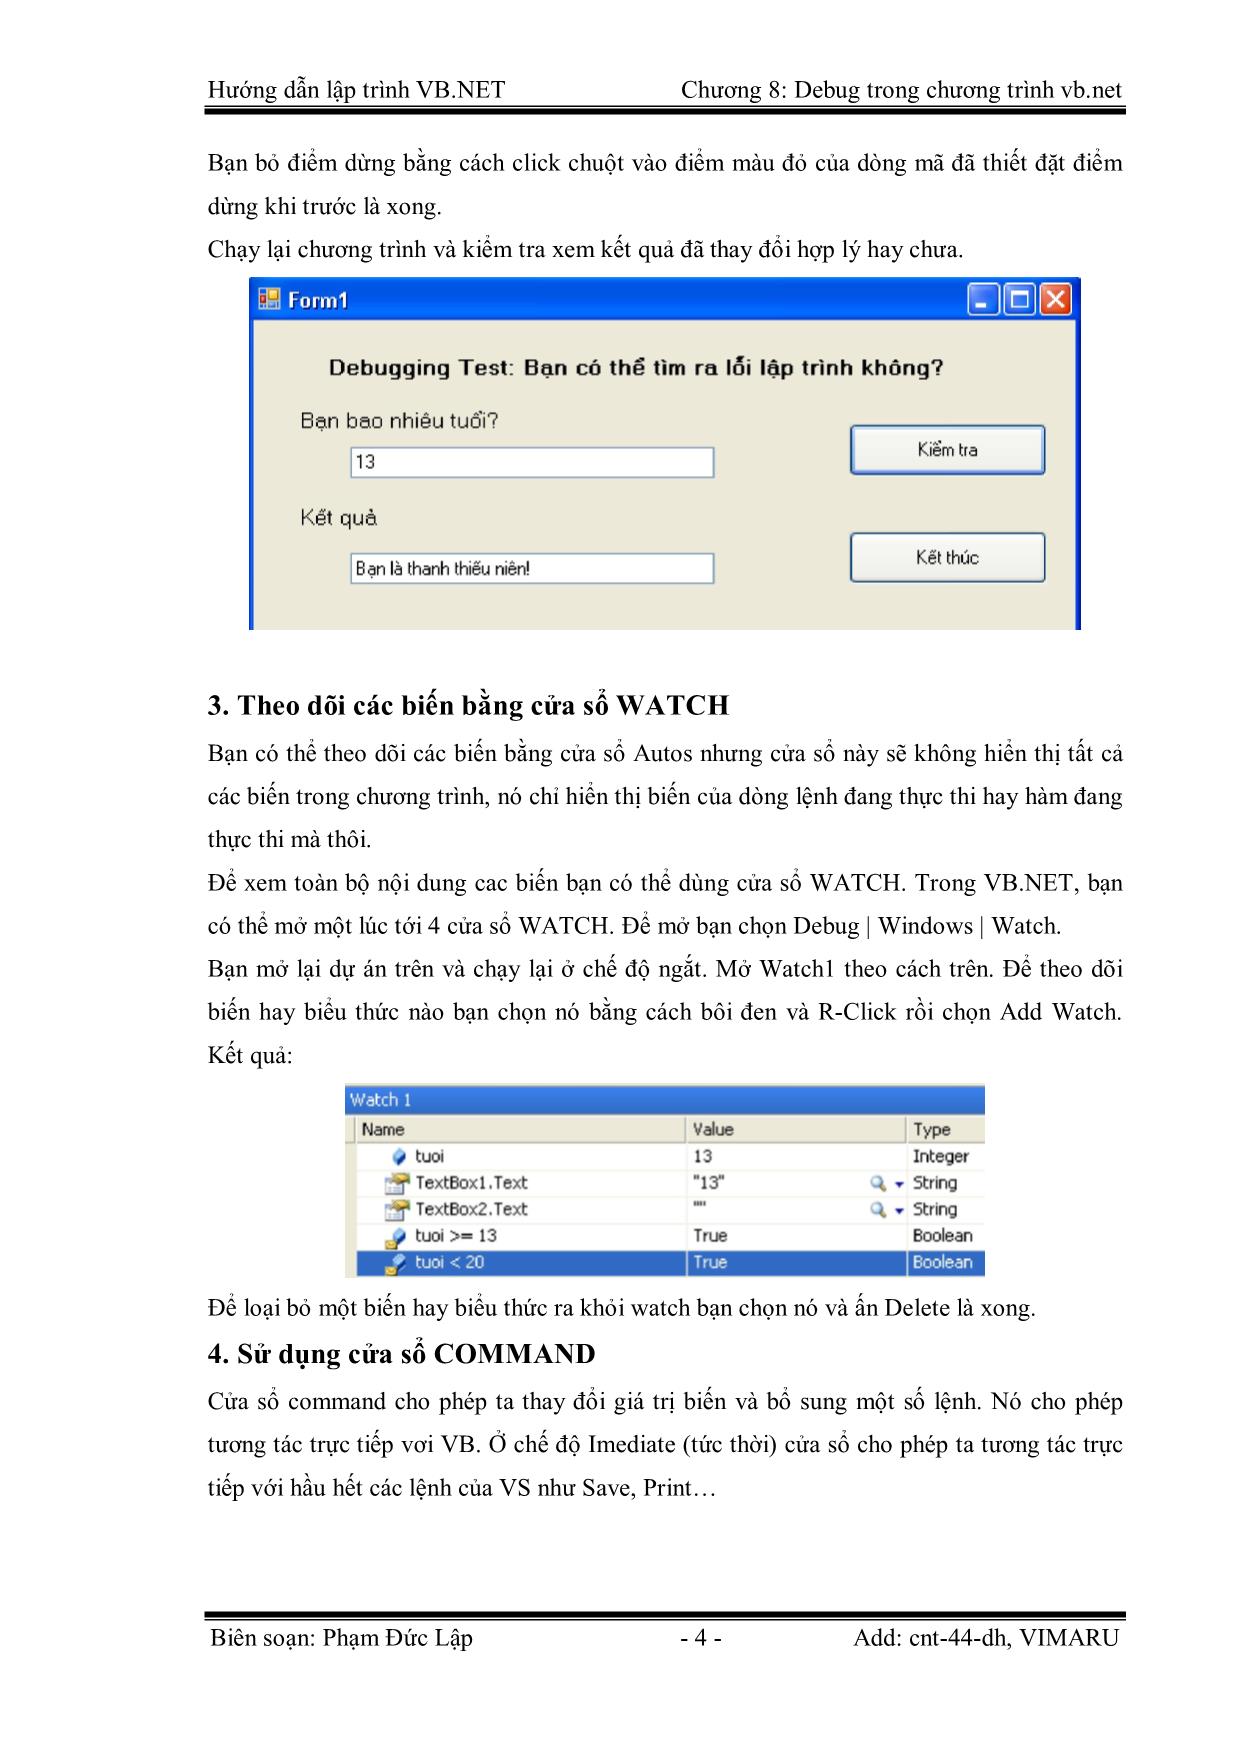 Giáo trình Hướng dẫn lập trình VB.NET - Chương 8: Gỡ lỗi (Debug) trong chương trình Visual Basic.Net - Phạm Đức Lập trang 4